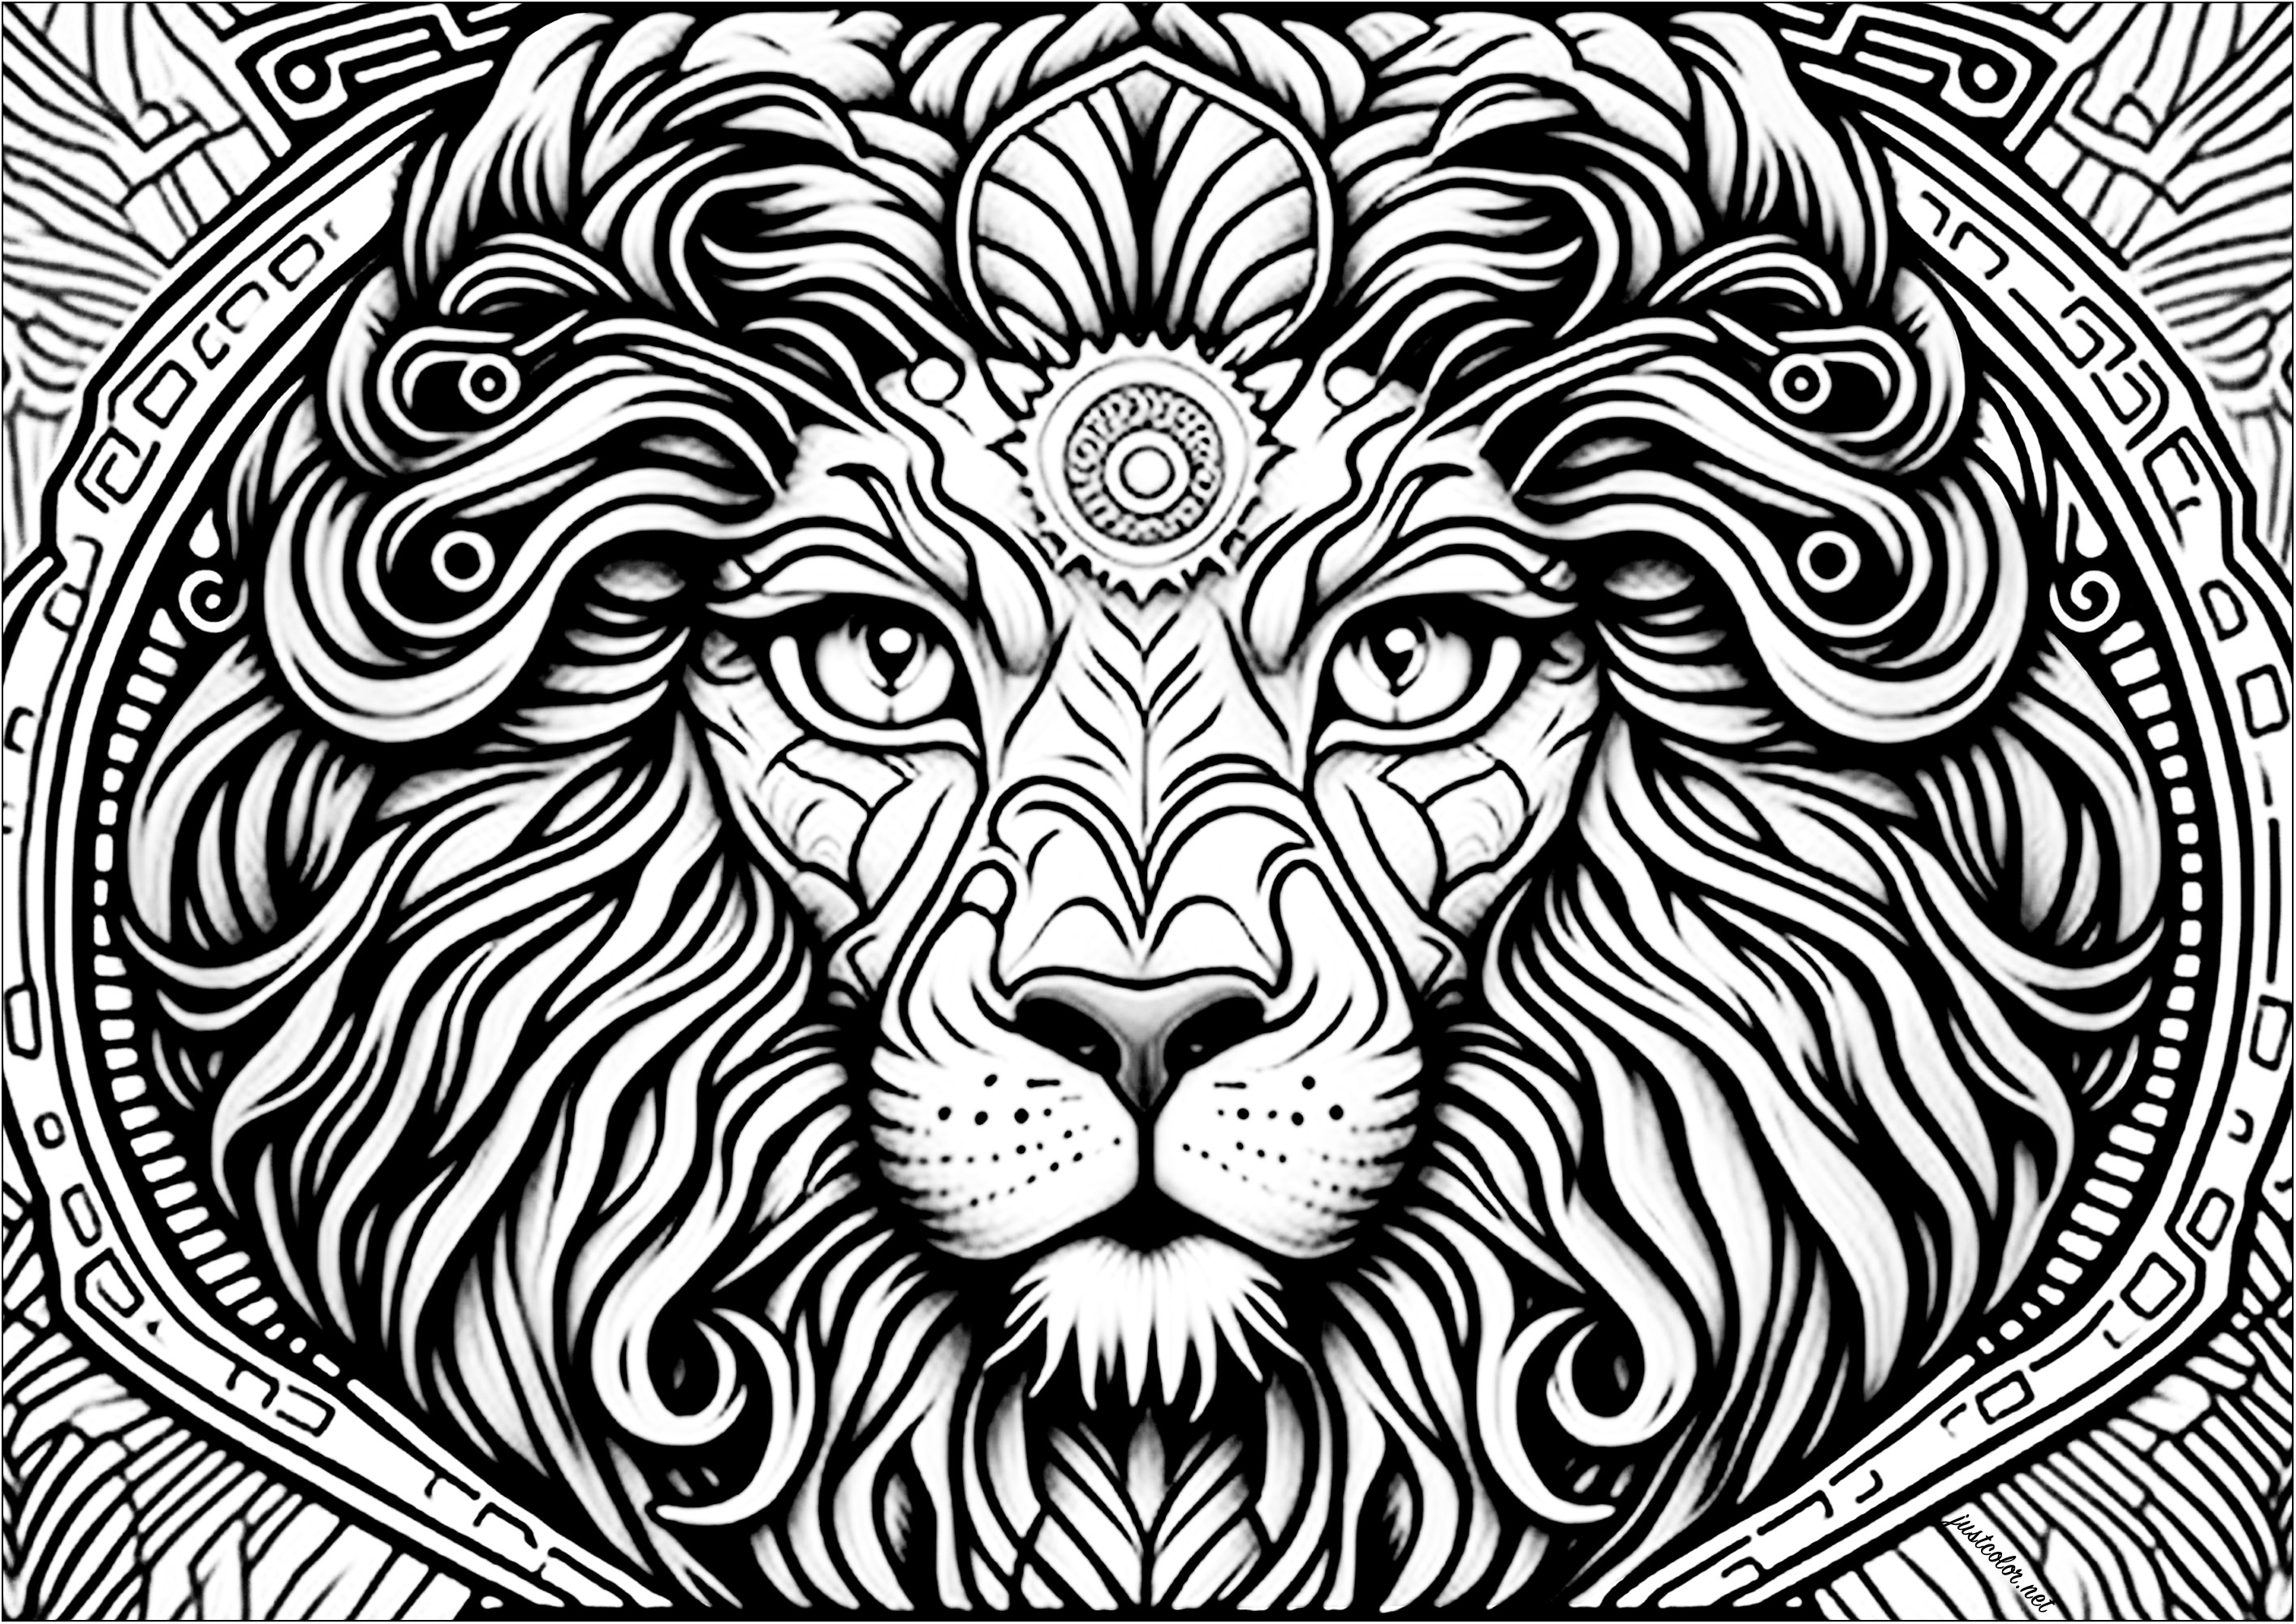 Löwenkopf von vorne gesehen, mit vielen Details. Diese schöne Ausmalvorlage stellt einen Löwenkopf von vorne gesehen dar, mit vielen Details.
